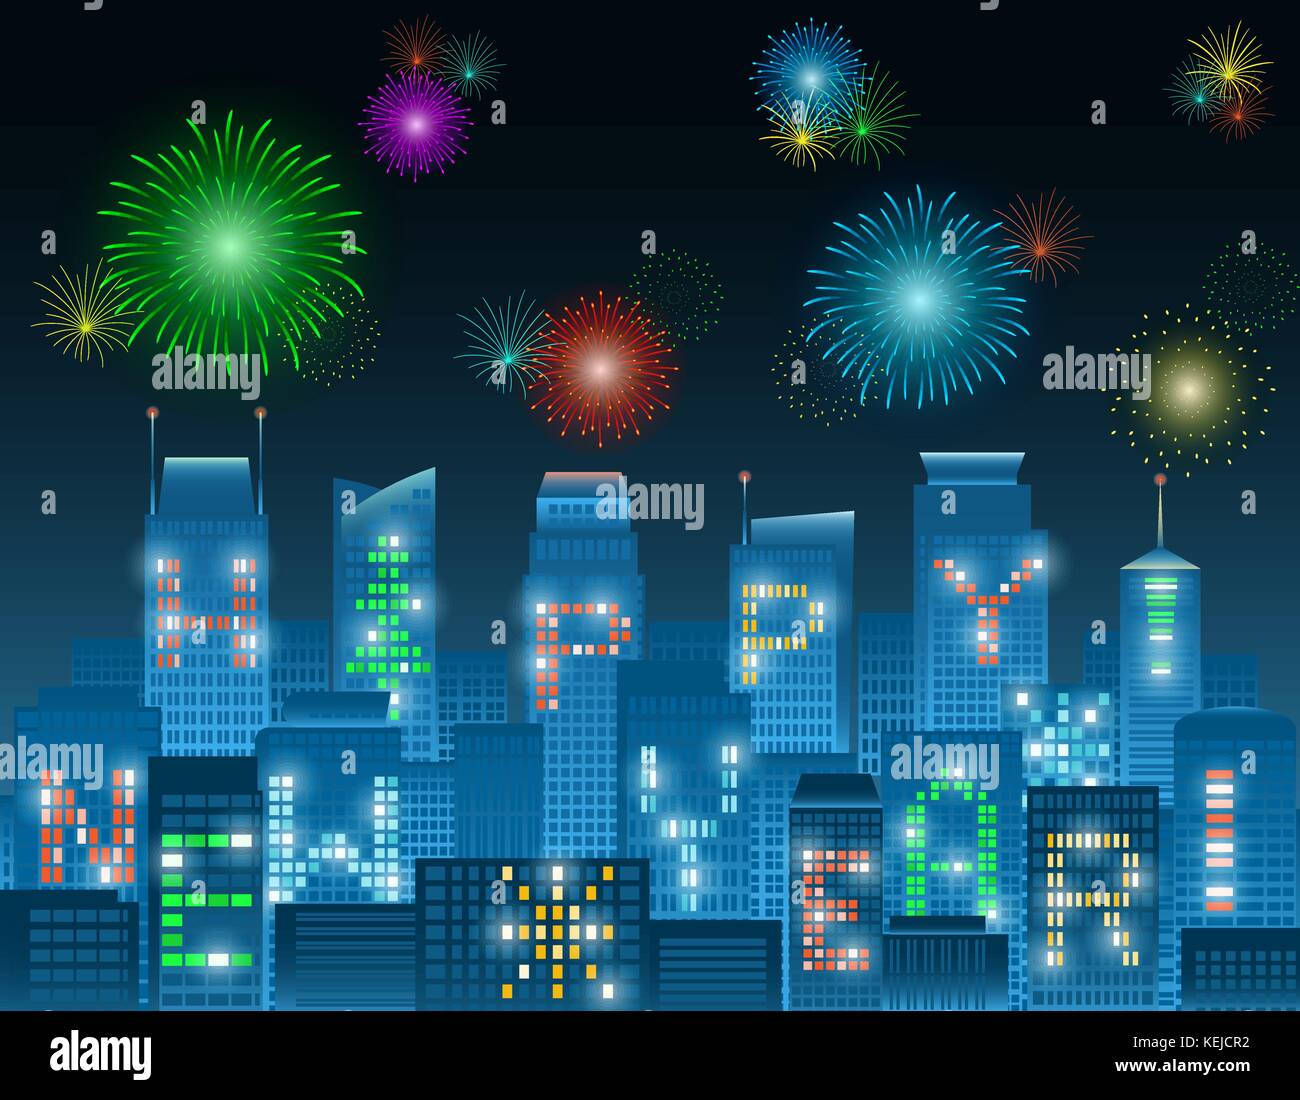 Bunte Frohes neues Jahr Alphabete auf beleuchteten Fenstern der Hochhäuser Gruppierung in einer Nacht Stadt mit bunten Feuerwerk in verschiedenen Patterns Stock Vektor